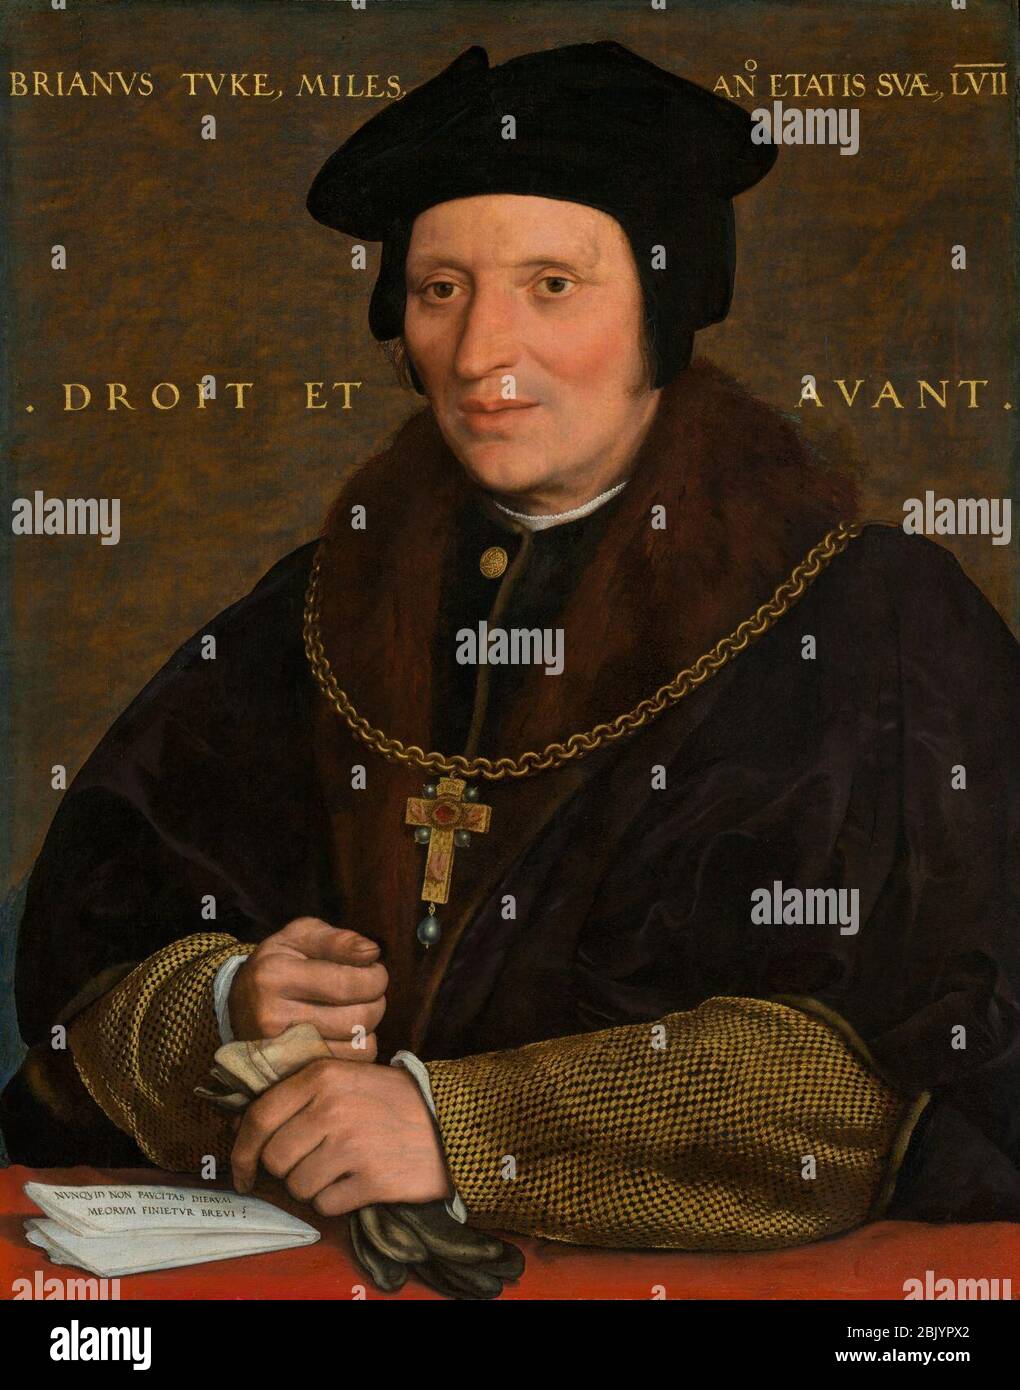 Holbein, Hans - Sir Brian Tuke. Stock Photo